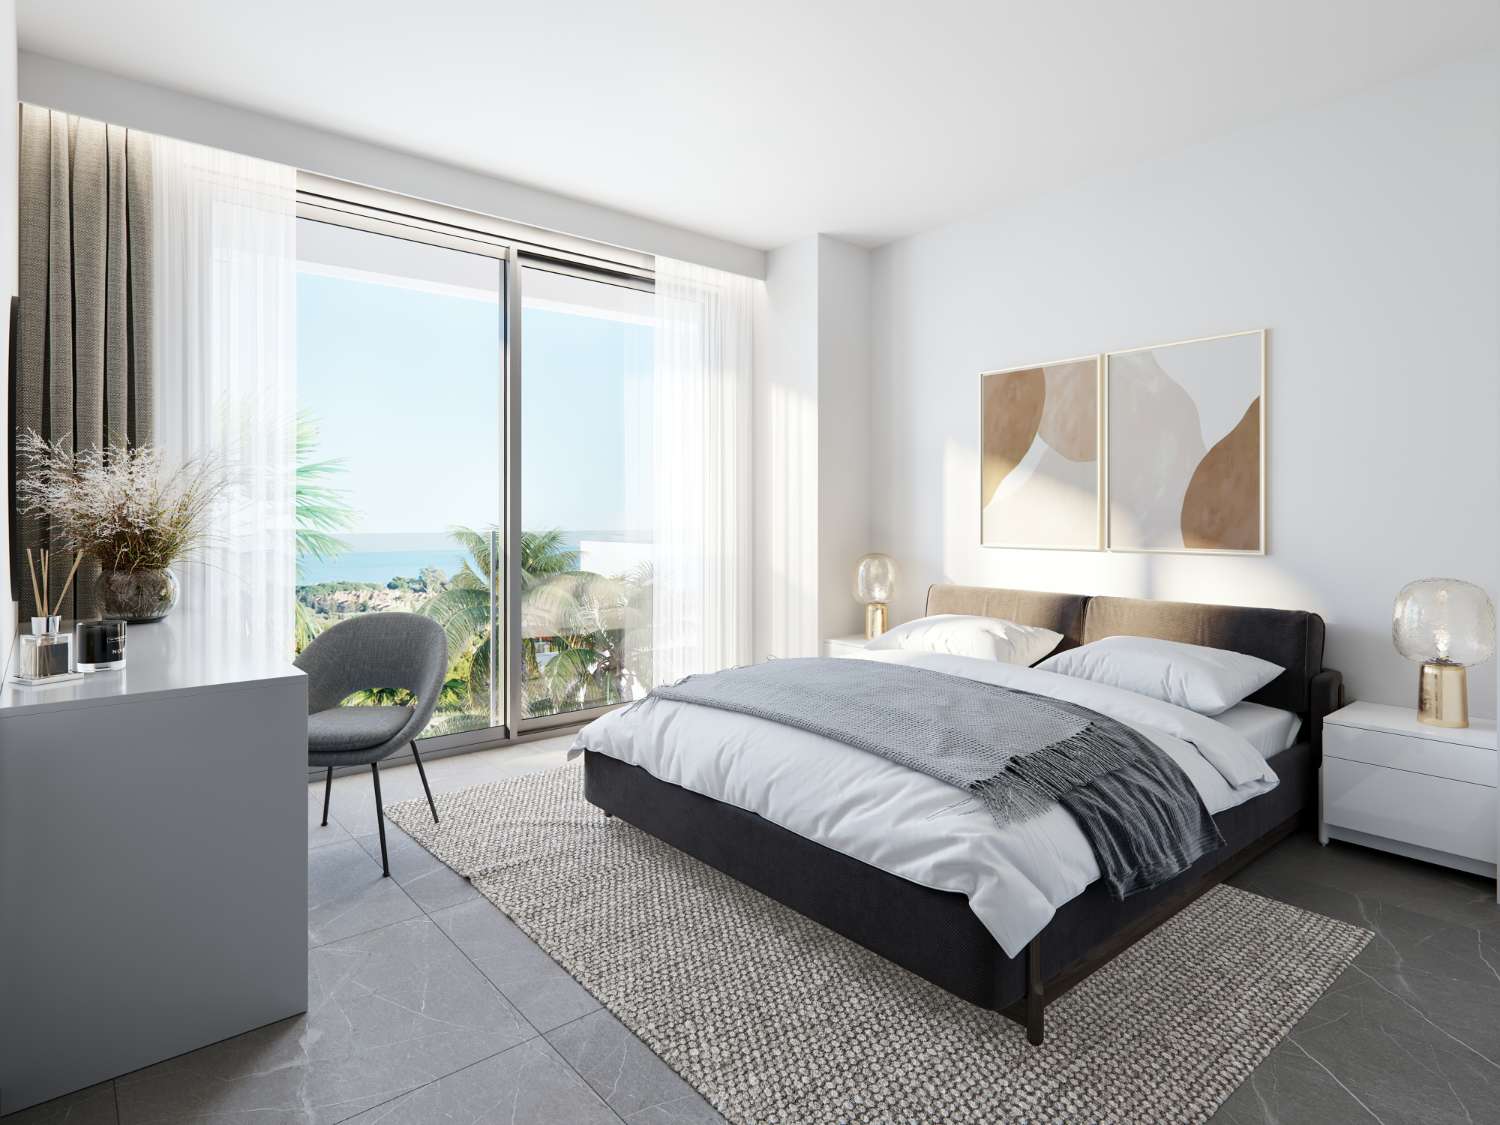 Ruim appartement met privétuin in luxe urbanisatie in resort in Marbella, op de eerste lijn van de golfbaan